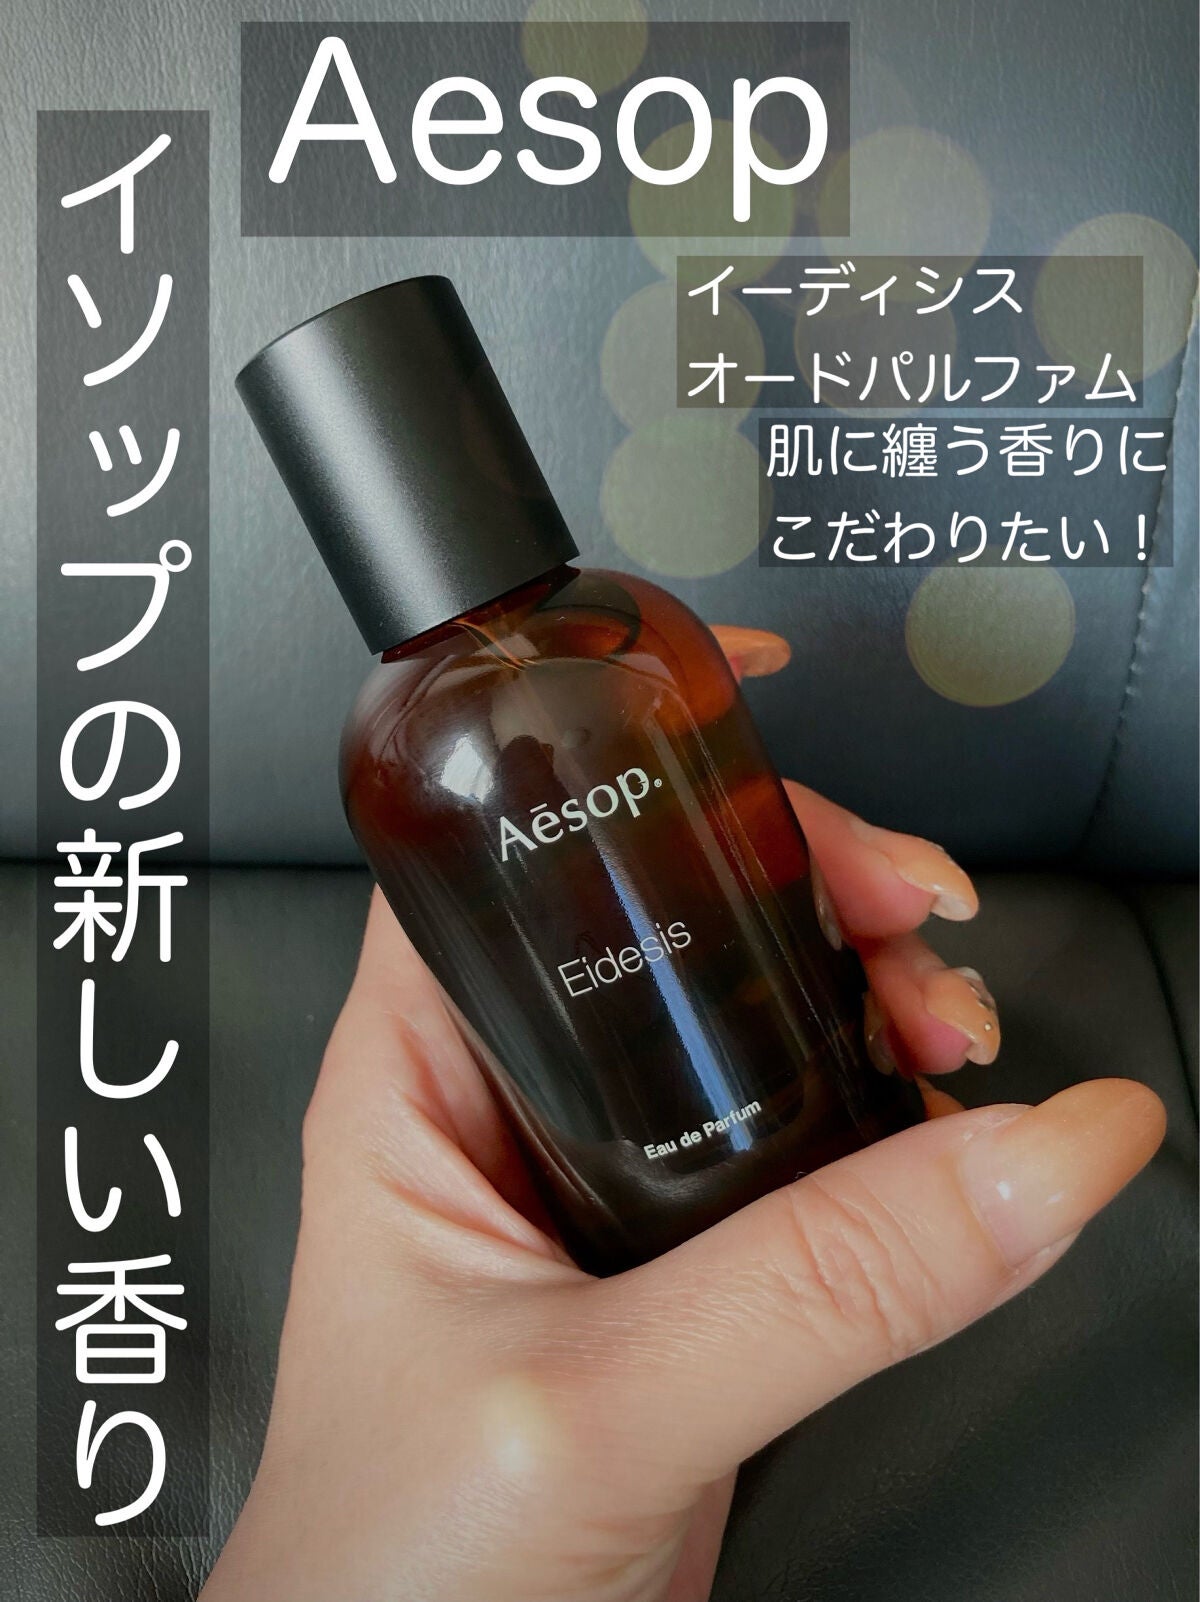 イソップ aesop イーディシス オードパルファム - 香水